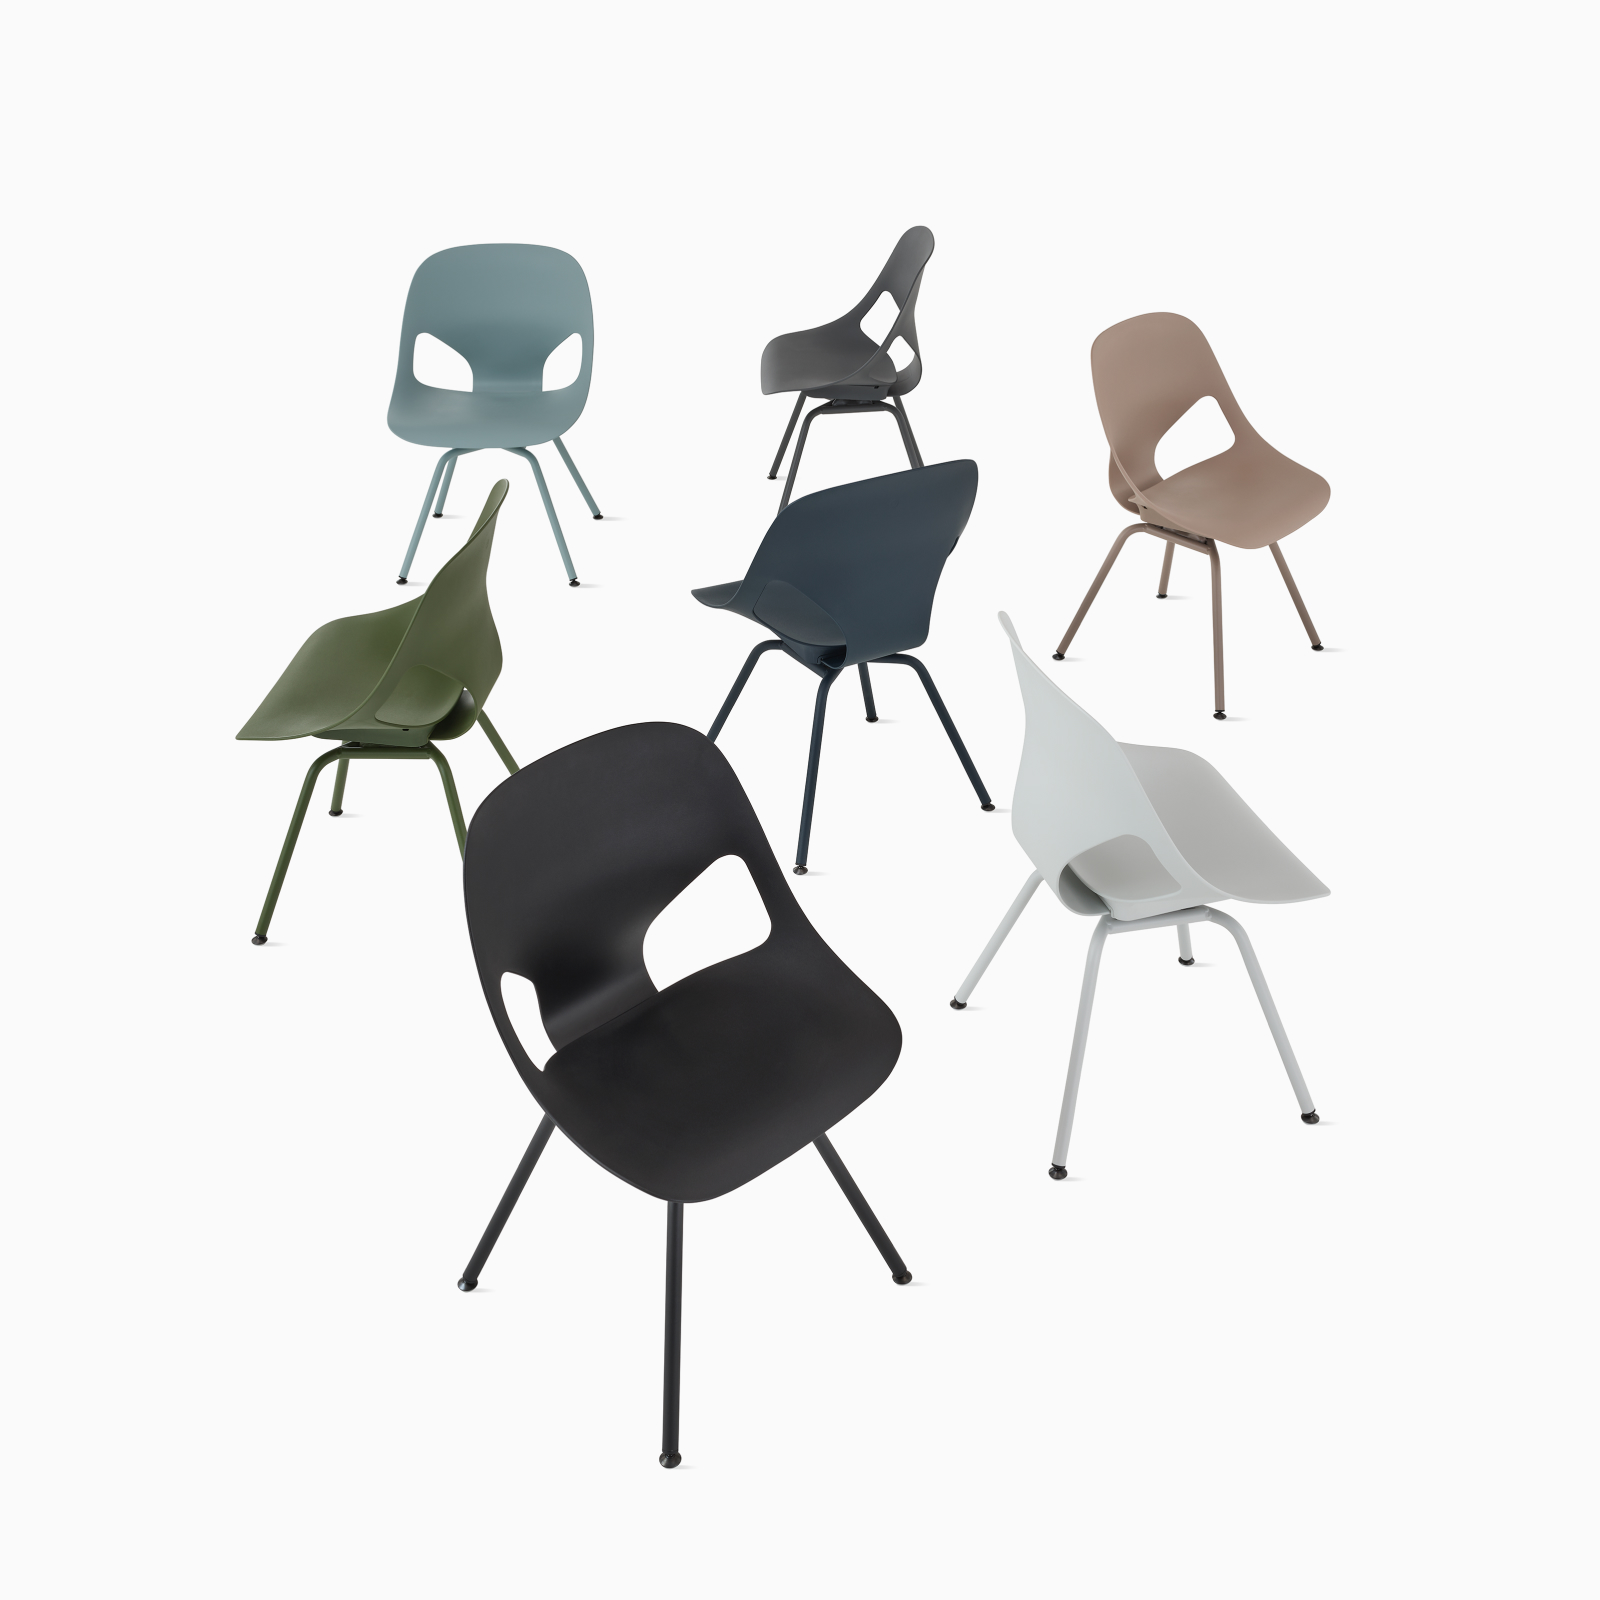 Um grupo de sete cadeiras de vistante Zeph sem braços em todas as cores disponíveis.